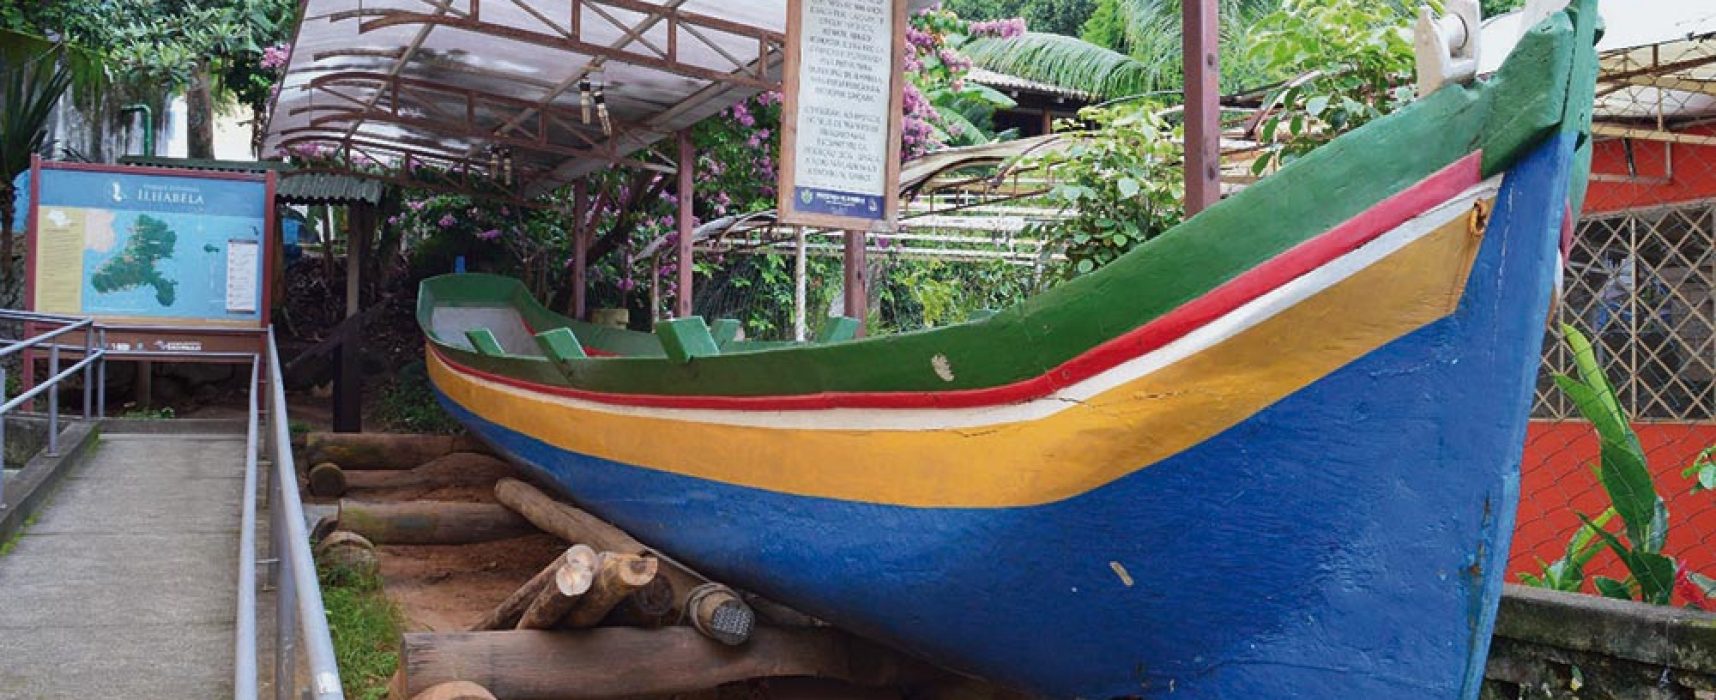 Prefeitura de Ilhabela vai restaurar a centenária canoa “Vencedora”